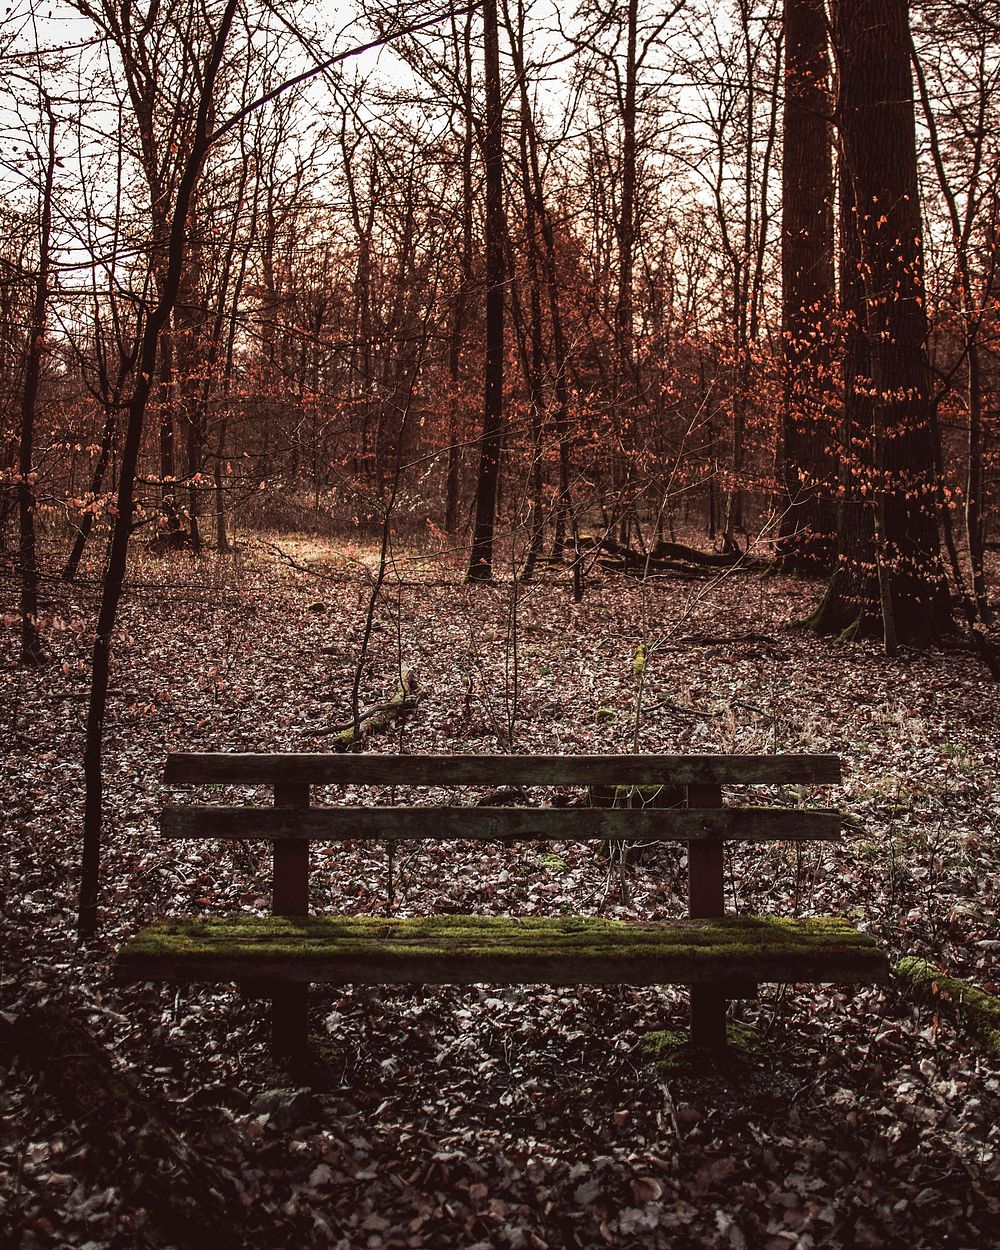 Park bench in the woods of Vaihingen an der Enz, Germany